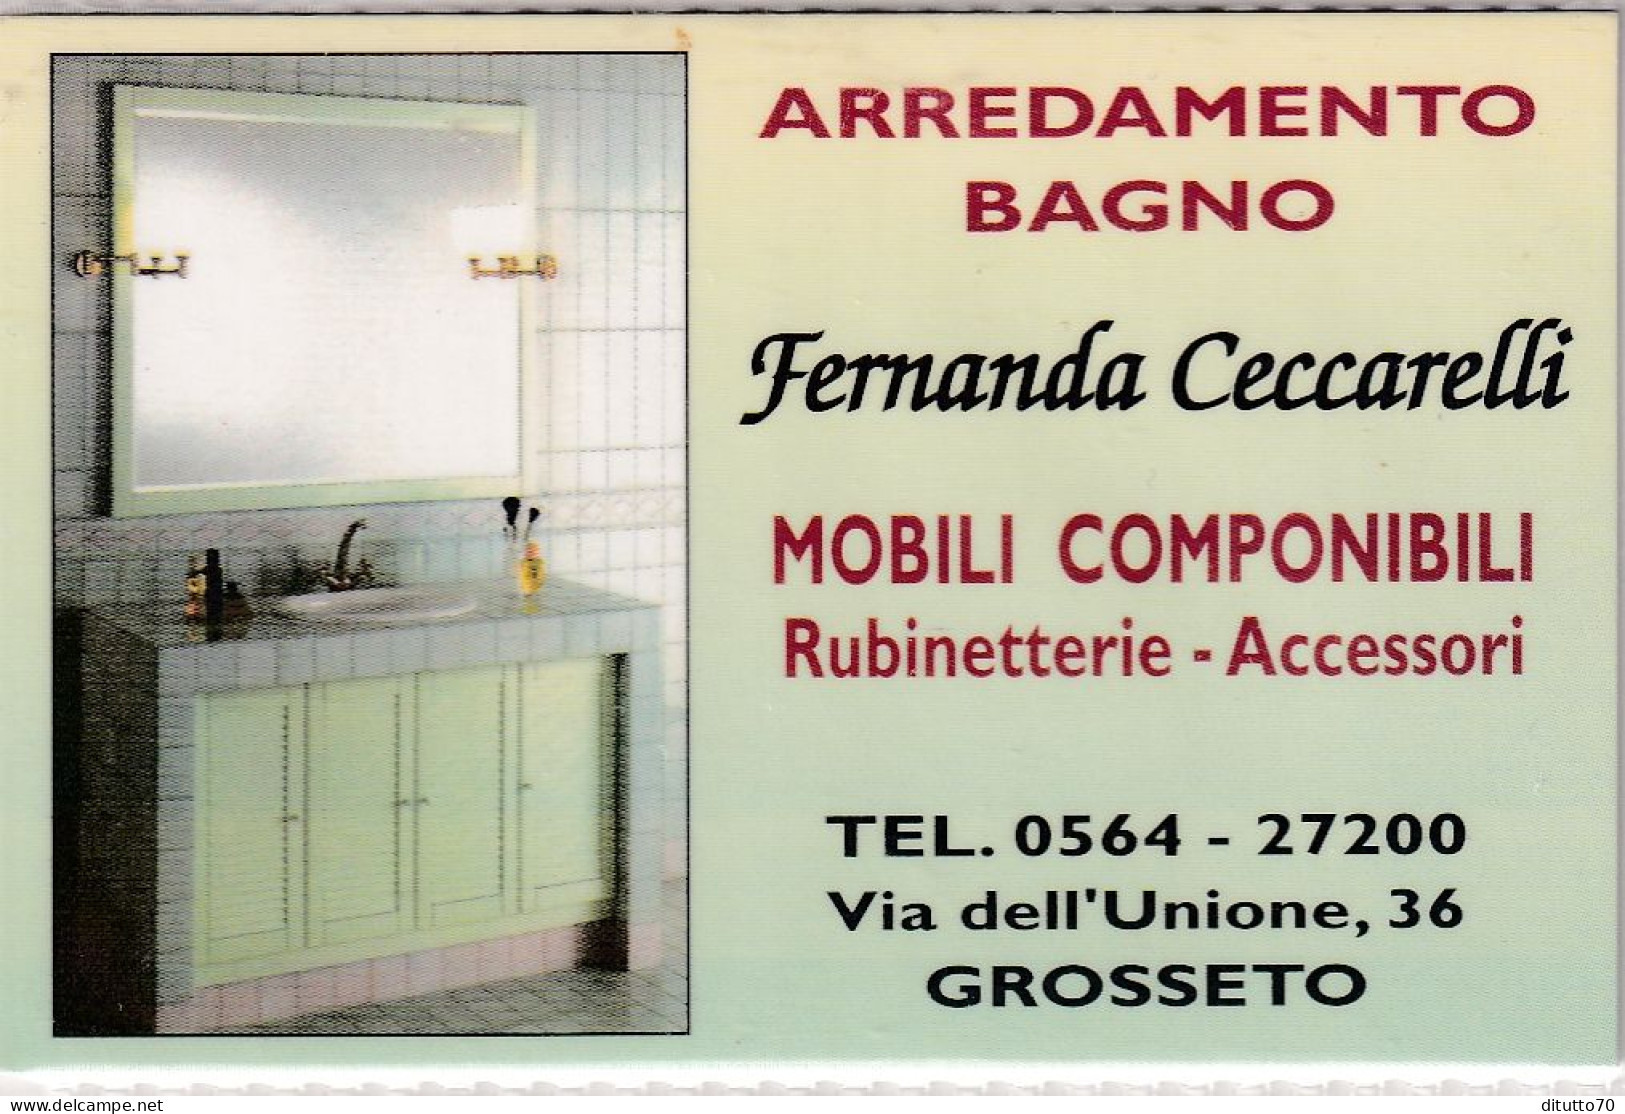 Calendarietto - Arredamento - Grosseto - Anno 1998 - Small : 1991-00